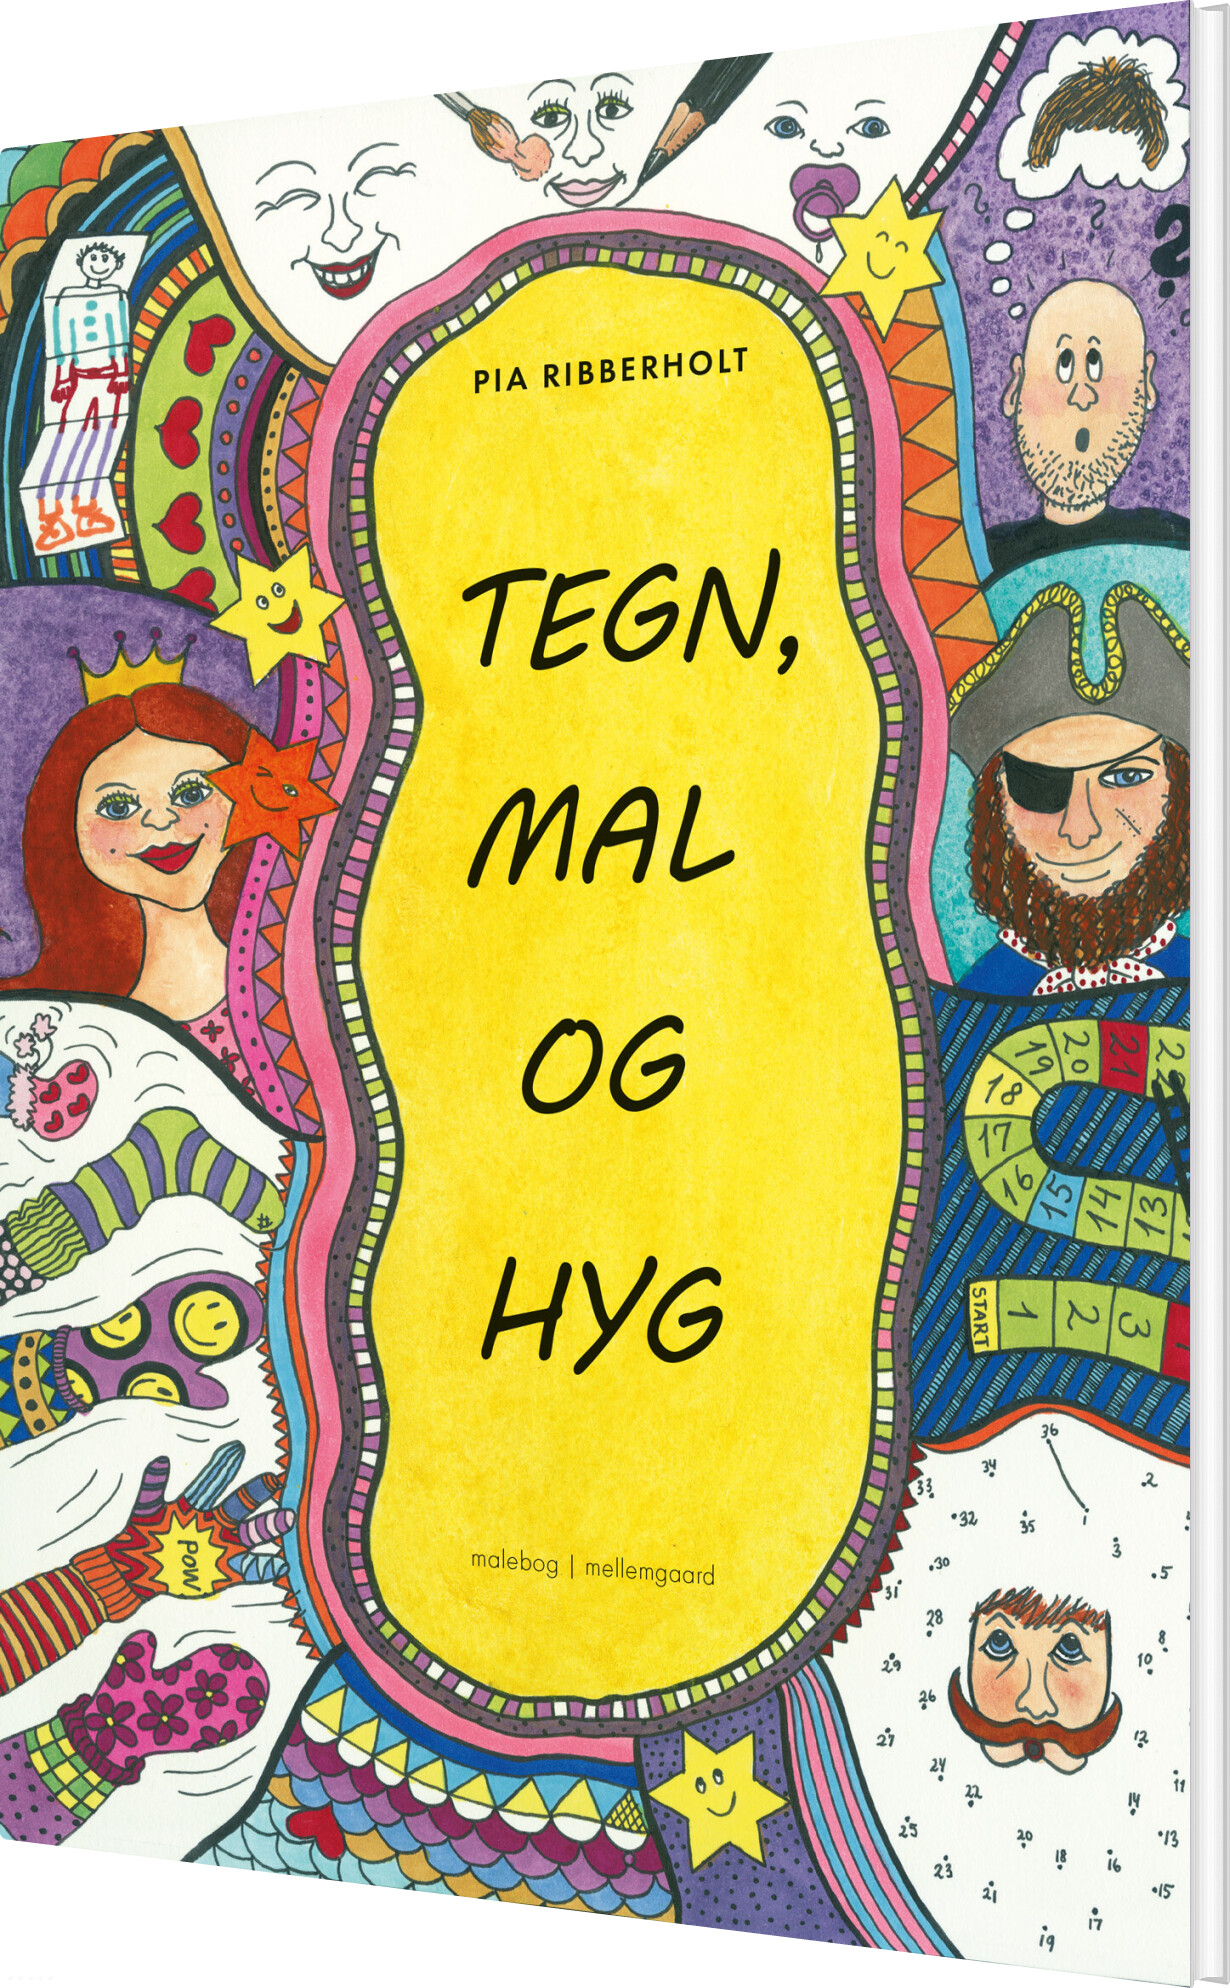 Billede af Tegn, Mal Og Hyg - Pia Ribberholt - Bog hos Gucca.dk